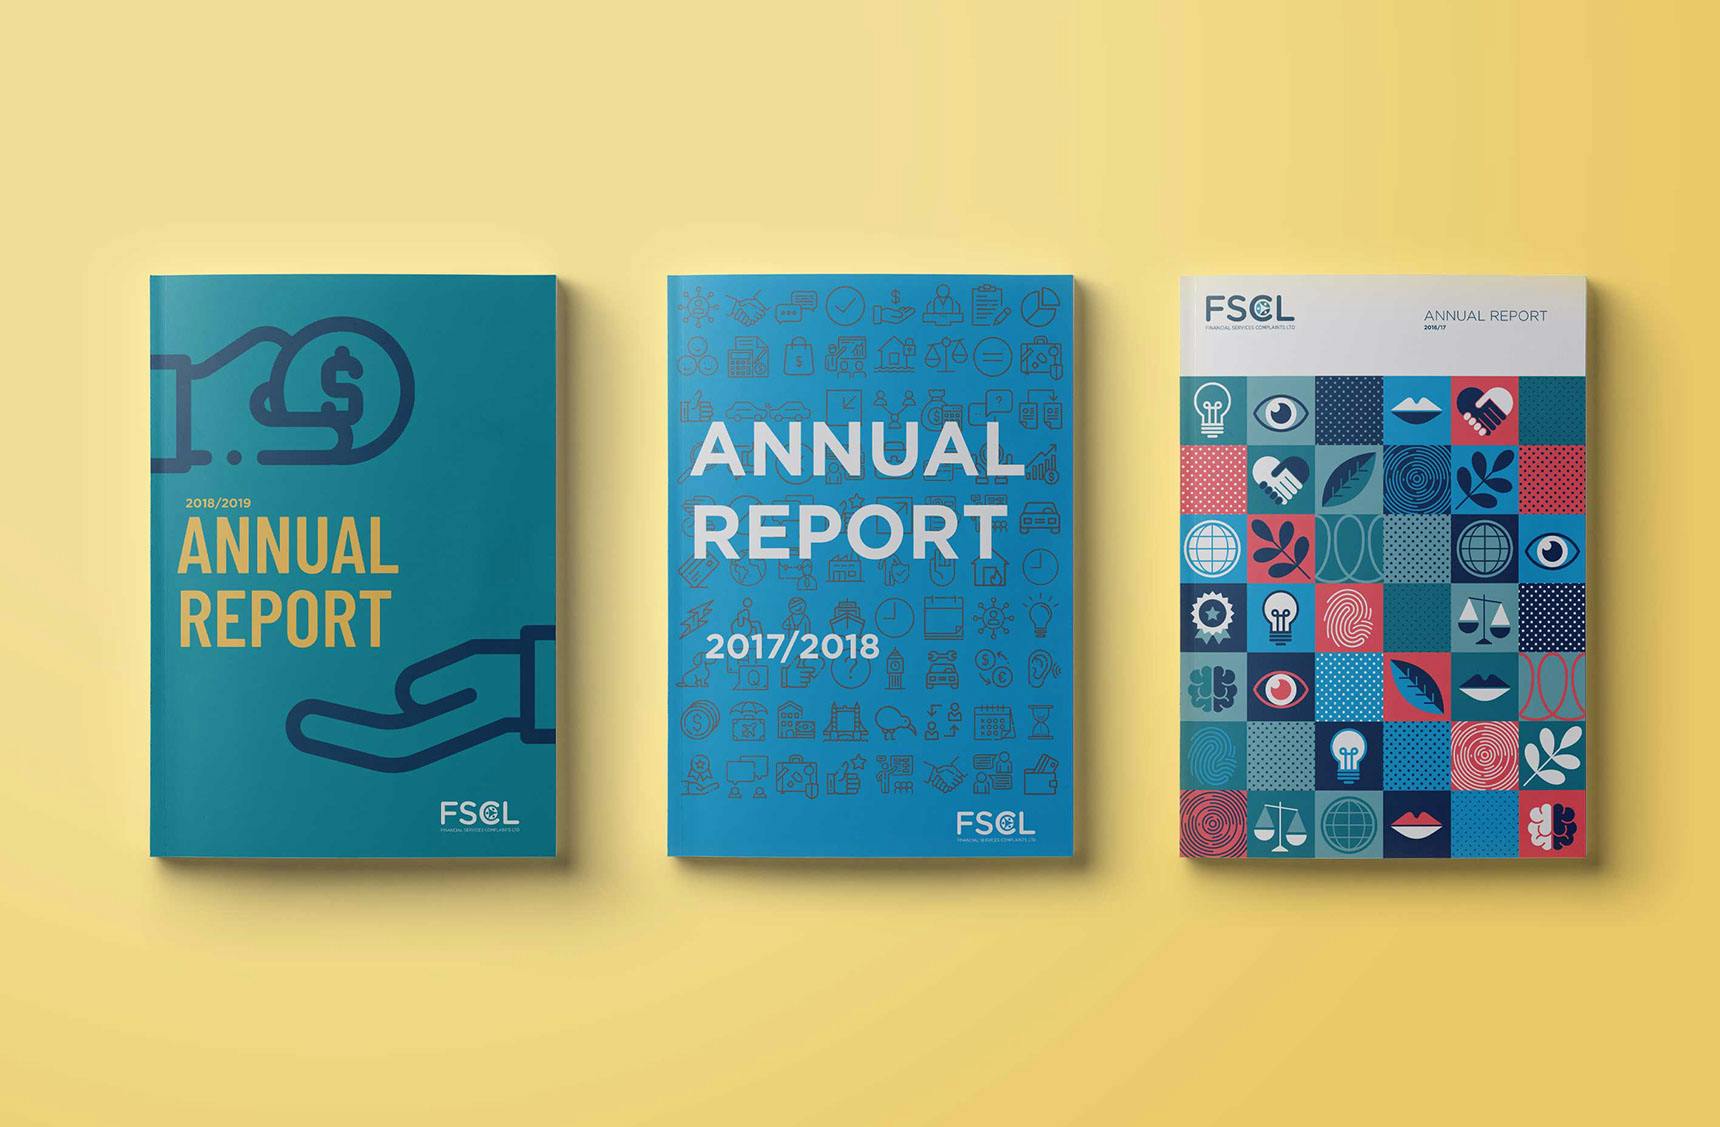 FSCL 2017/18 Annual Report Design